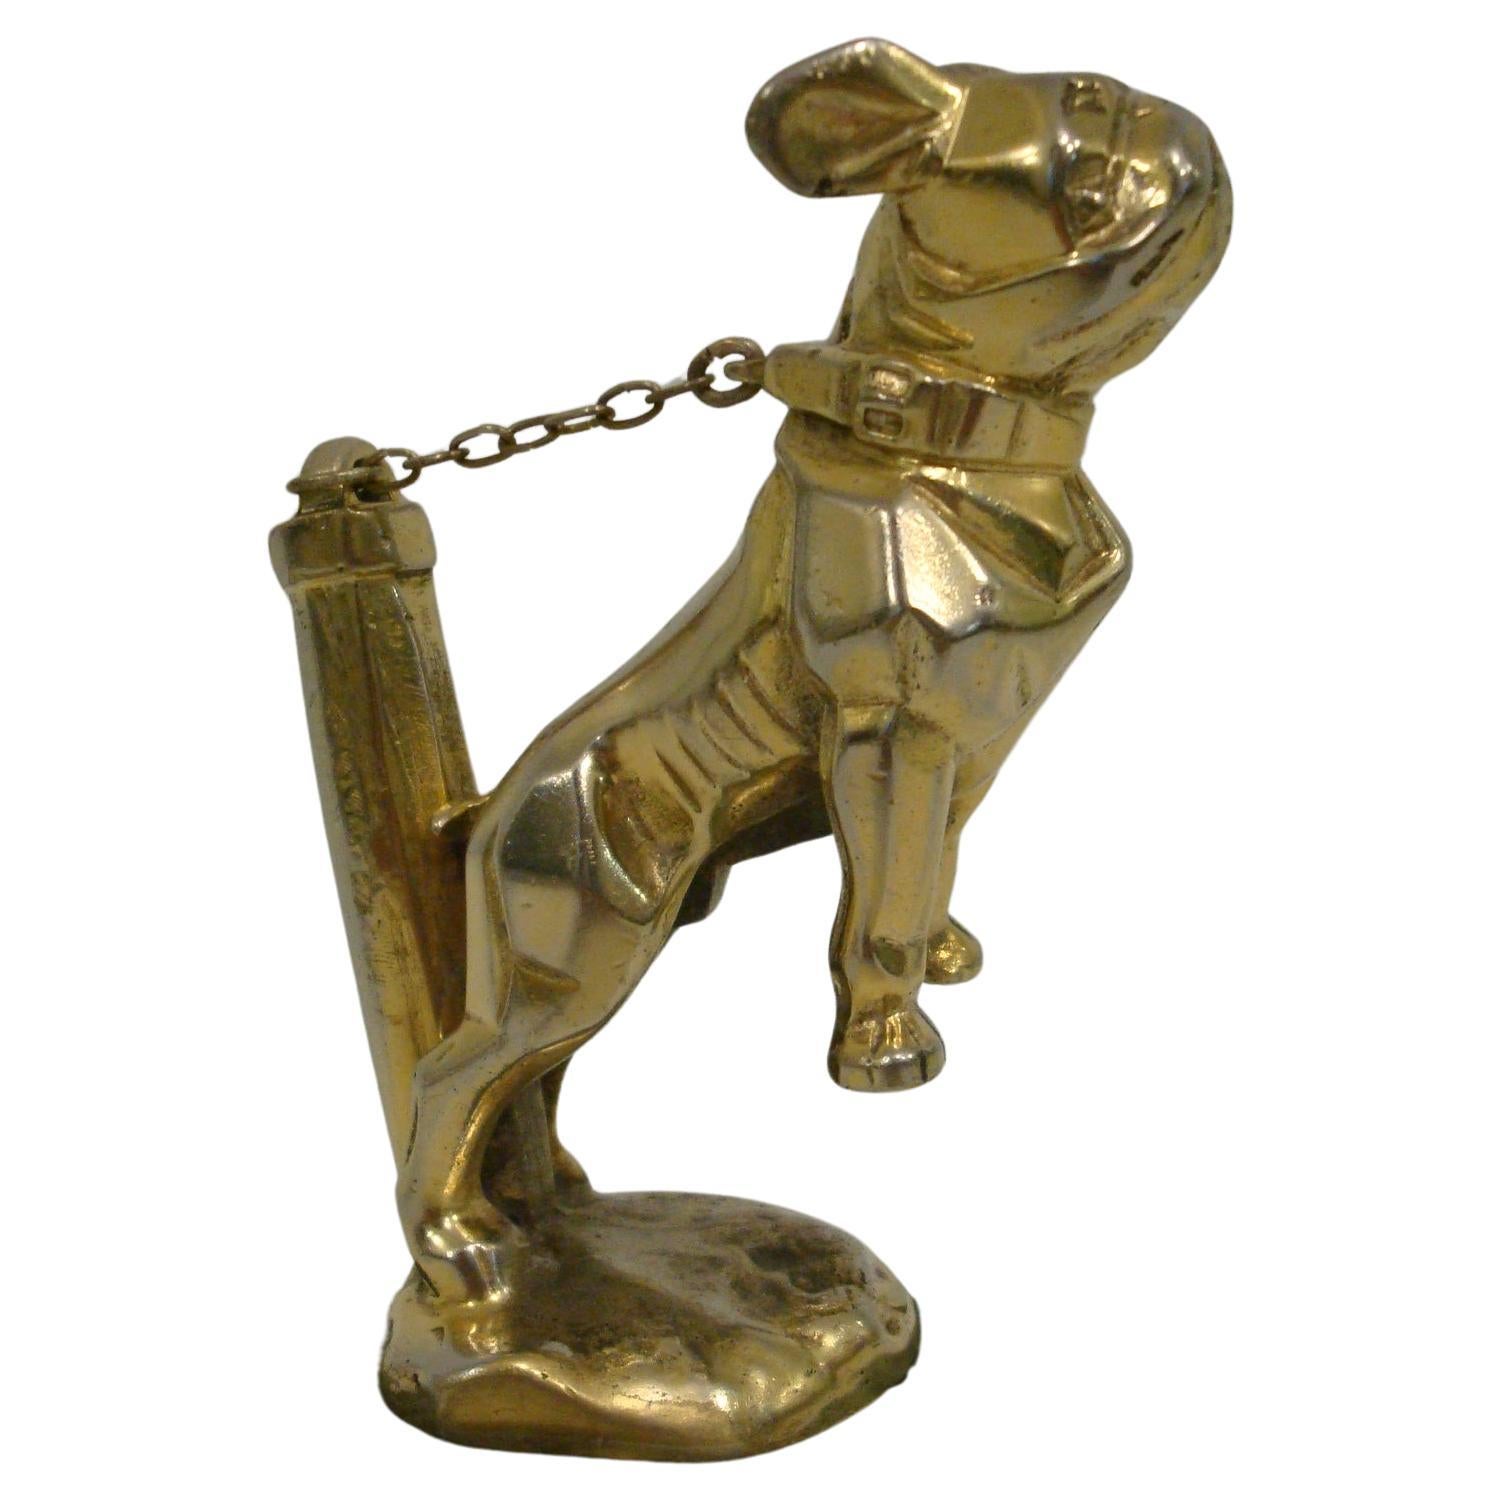 Art Deco 'Chained Bulldog' Auto Maskottchen / Kühlerfigur entworfen von Marvel, französisch, 1920er Jahre, versilberte und vergoldete Bronze, kleine Version, 14cm lang, komplett mit Kette. Sehr schönes Stück Automobilia für den Schreibtisch.

Einige